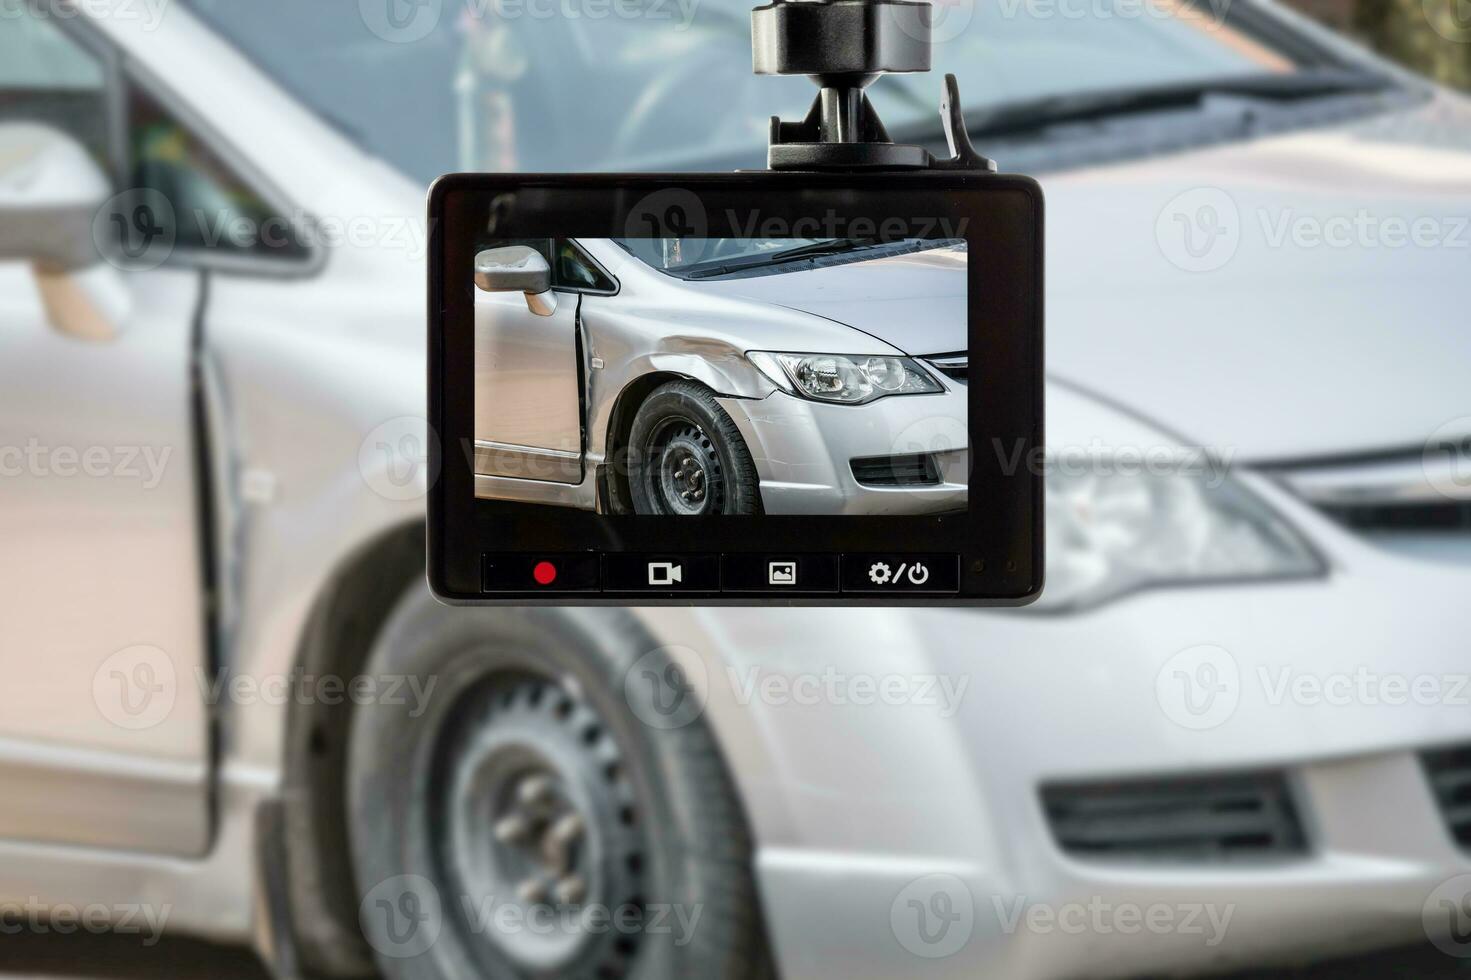 enregistreur vidéo de caméra de vidéosurveillance de voiture avec accident de voiture sur la route photo